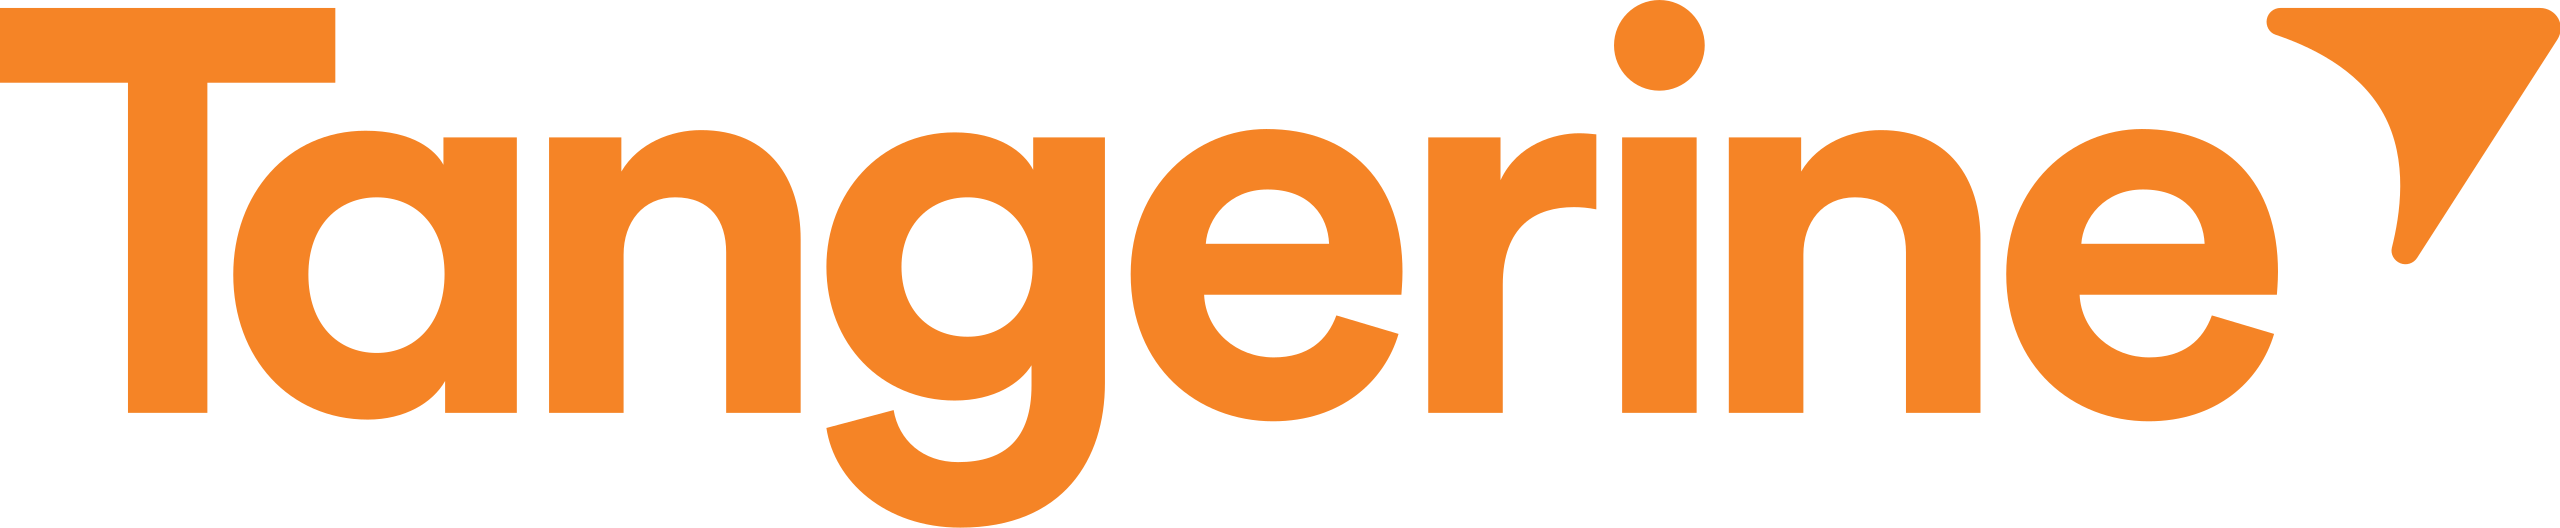 Tangerine Brand Logo